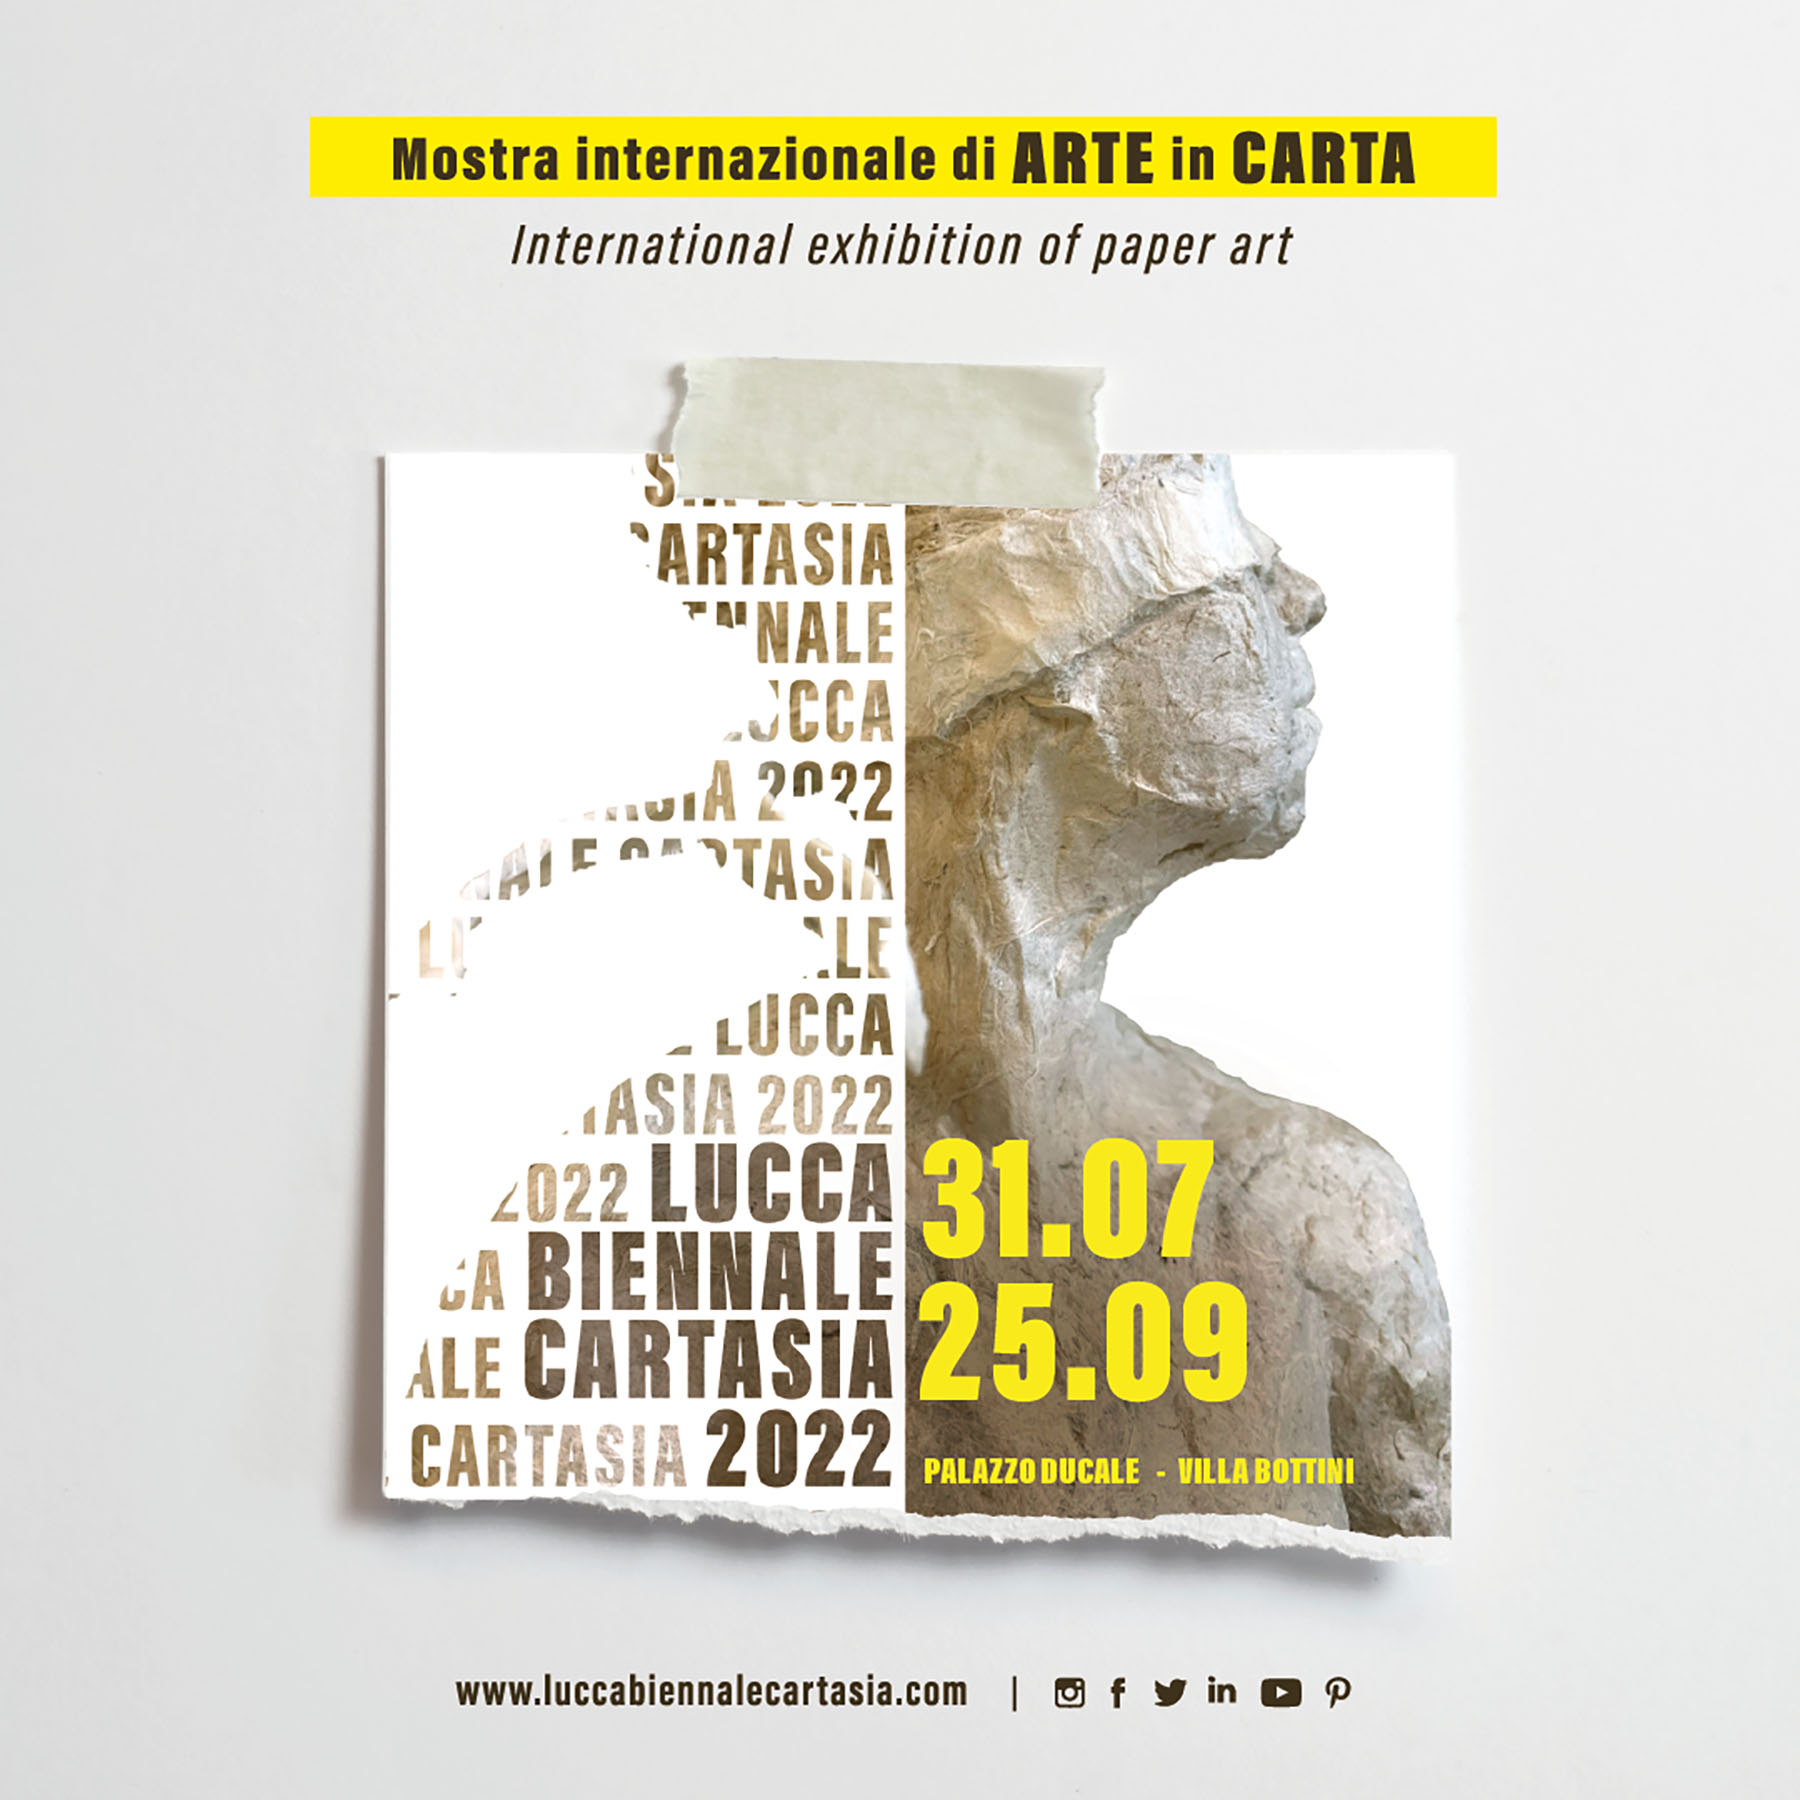 Cartasia - Mostra internazionale di ARTE in CARTA